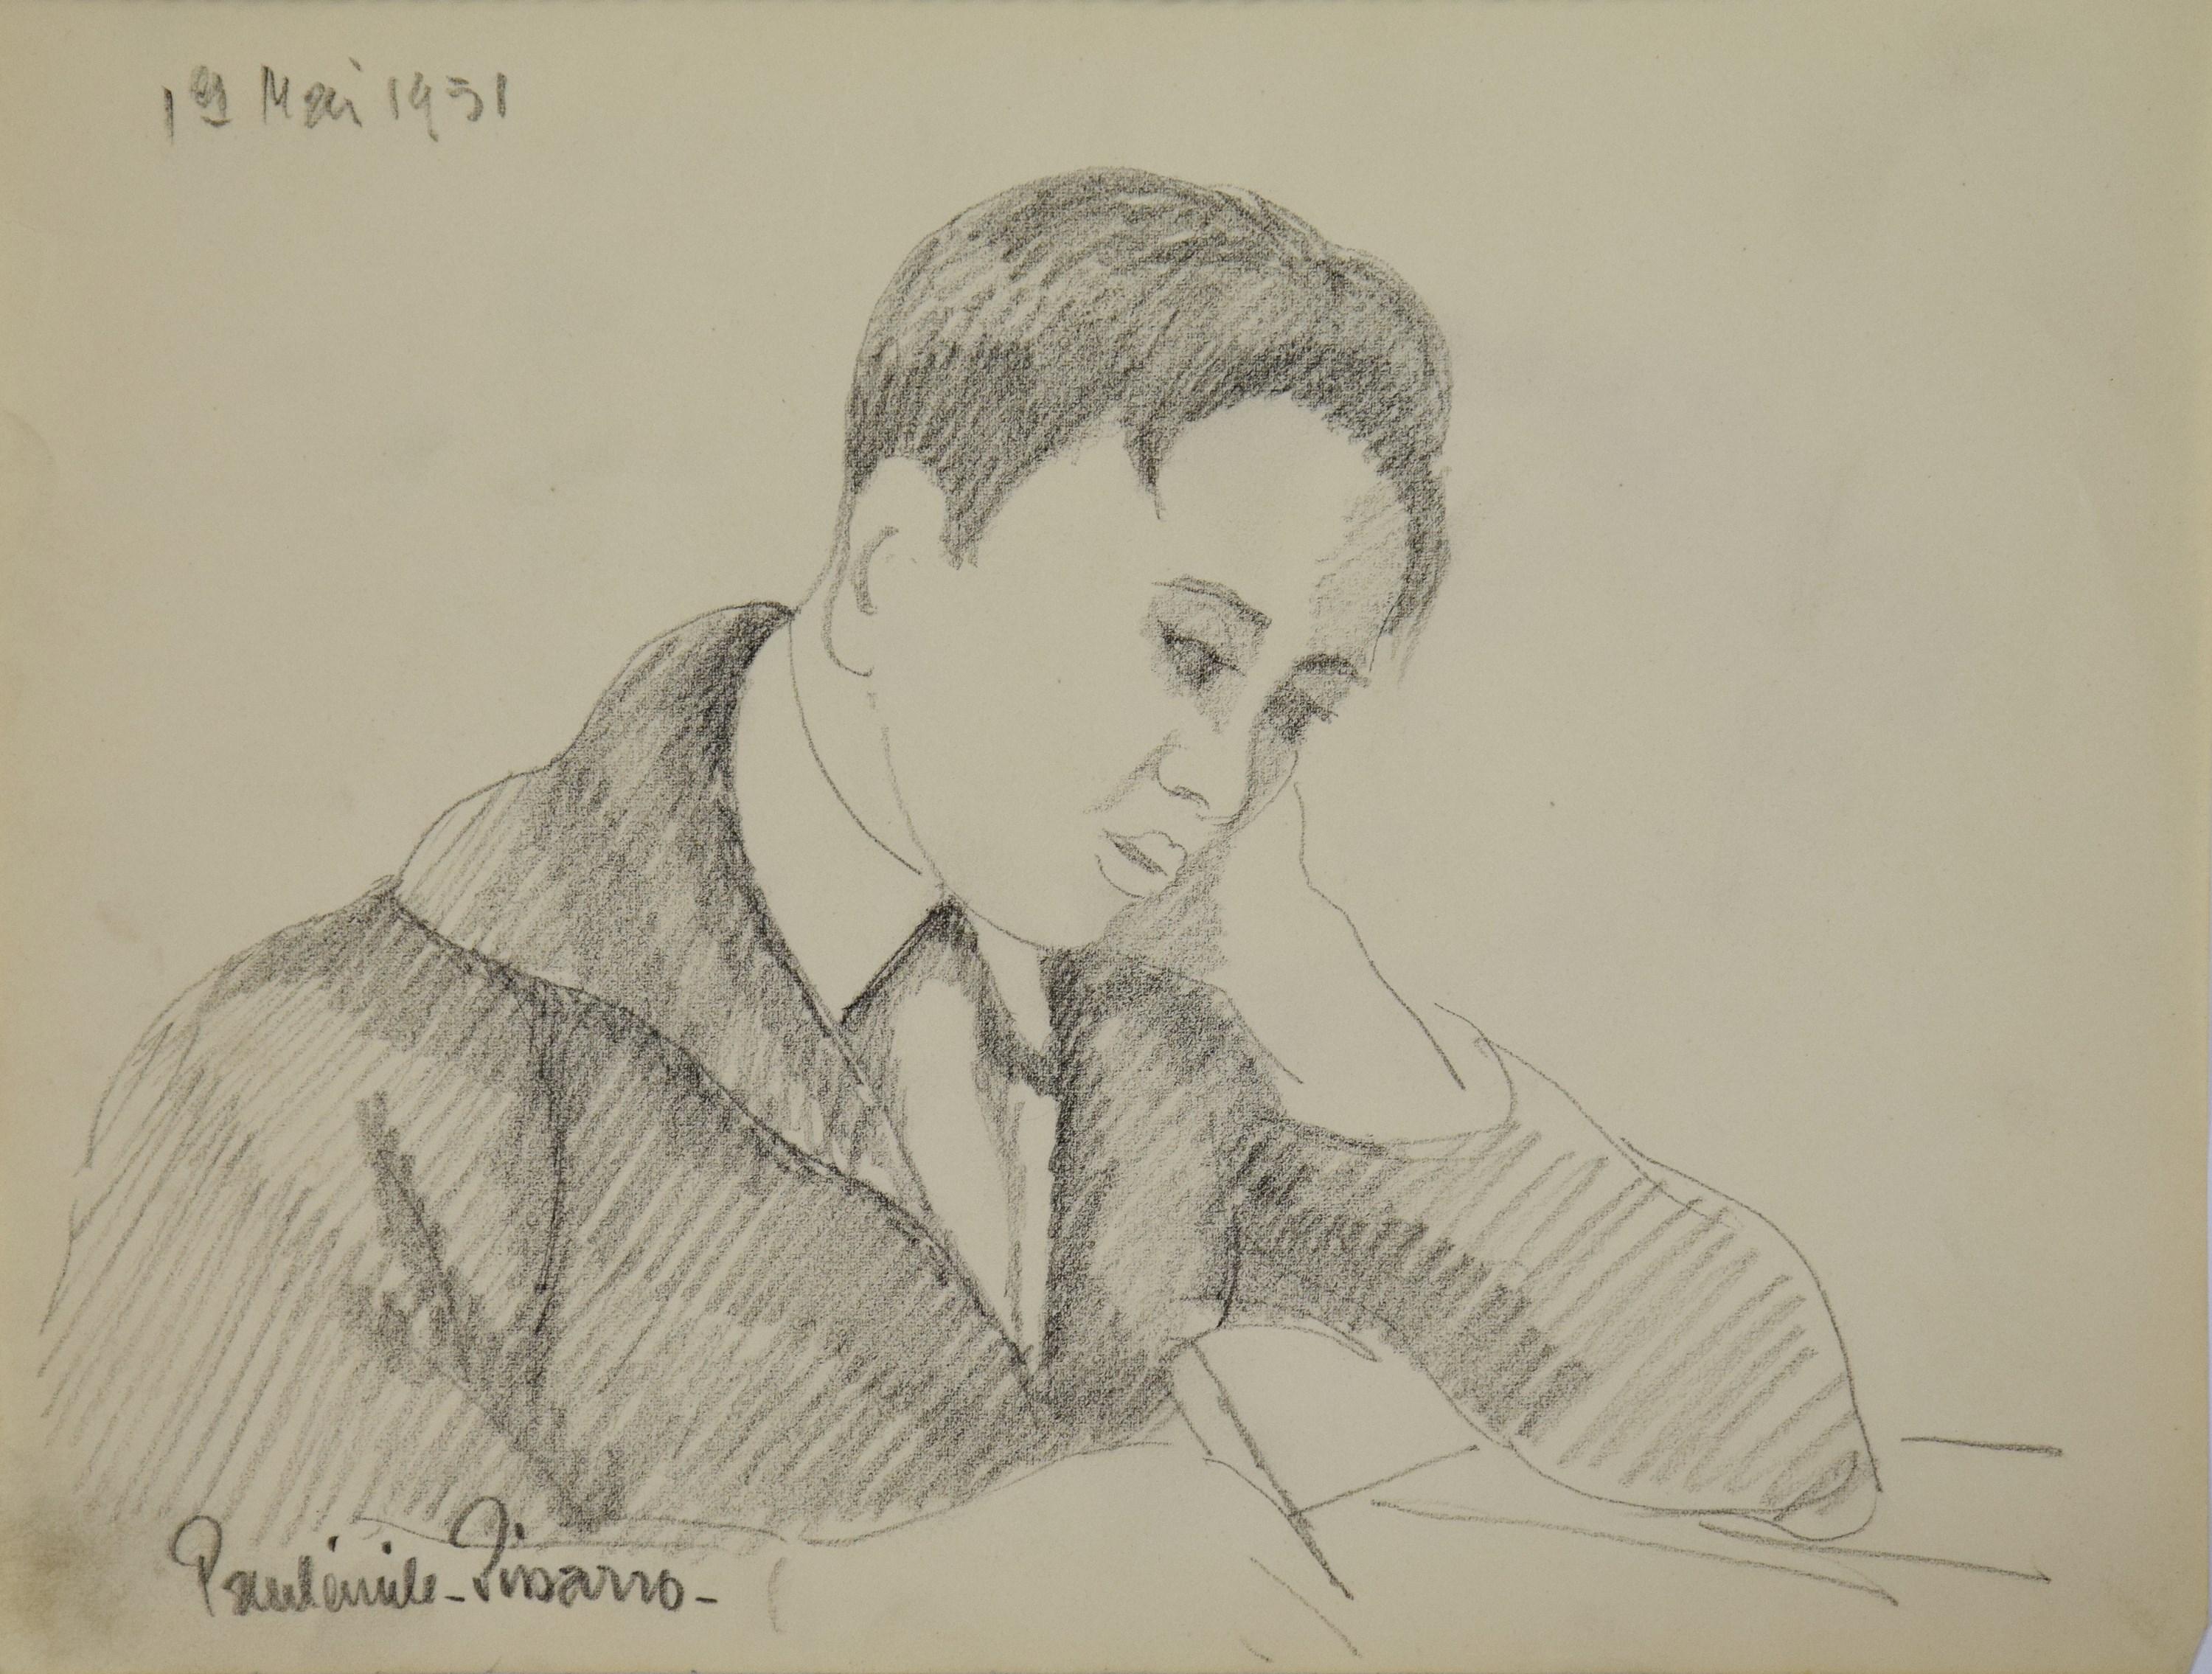 Les Devoirs de Paulmile Pissarro, 1951